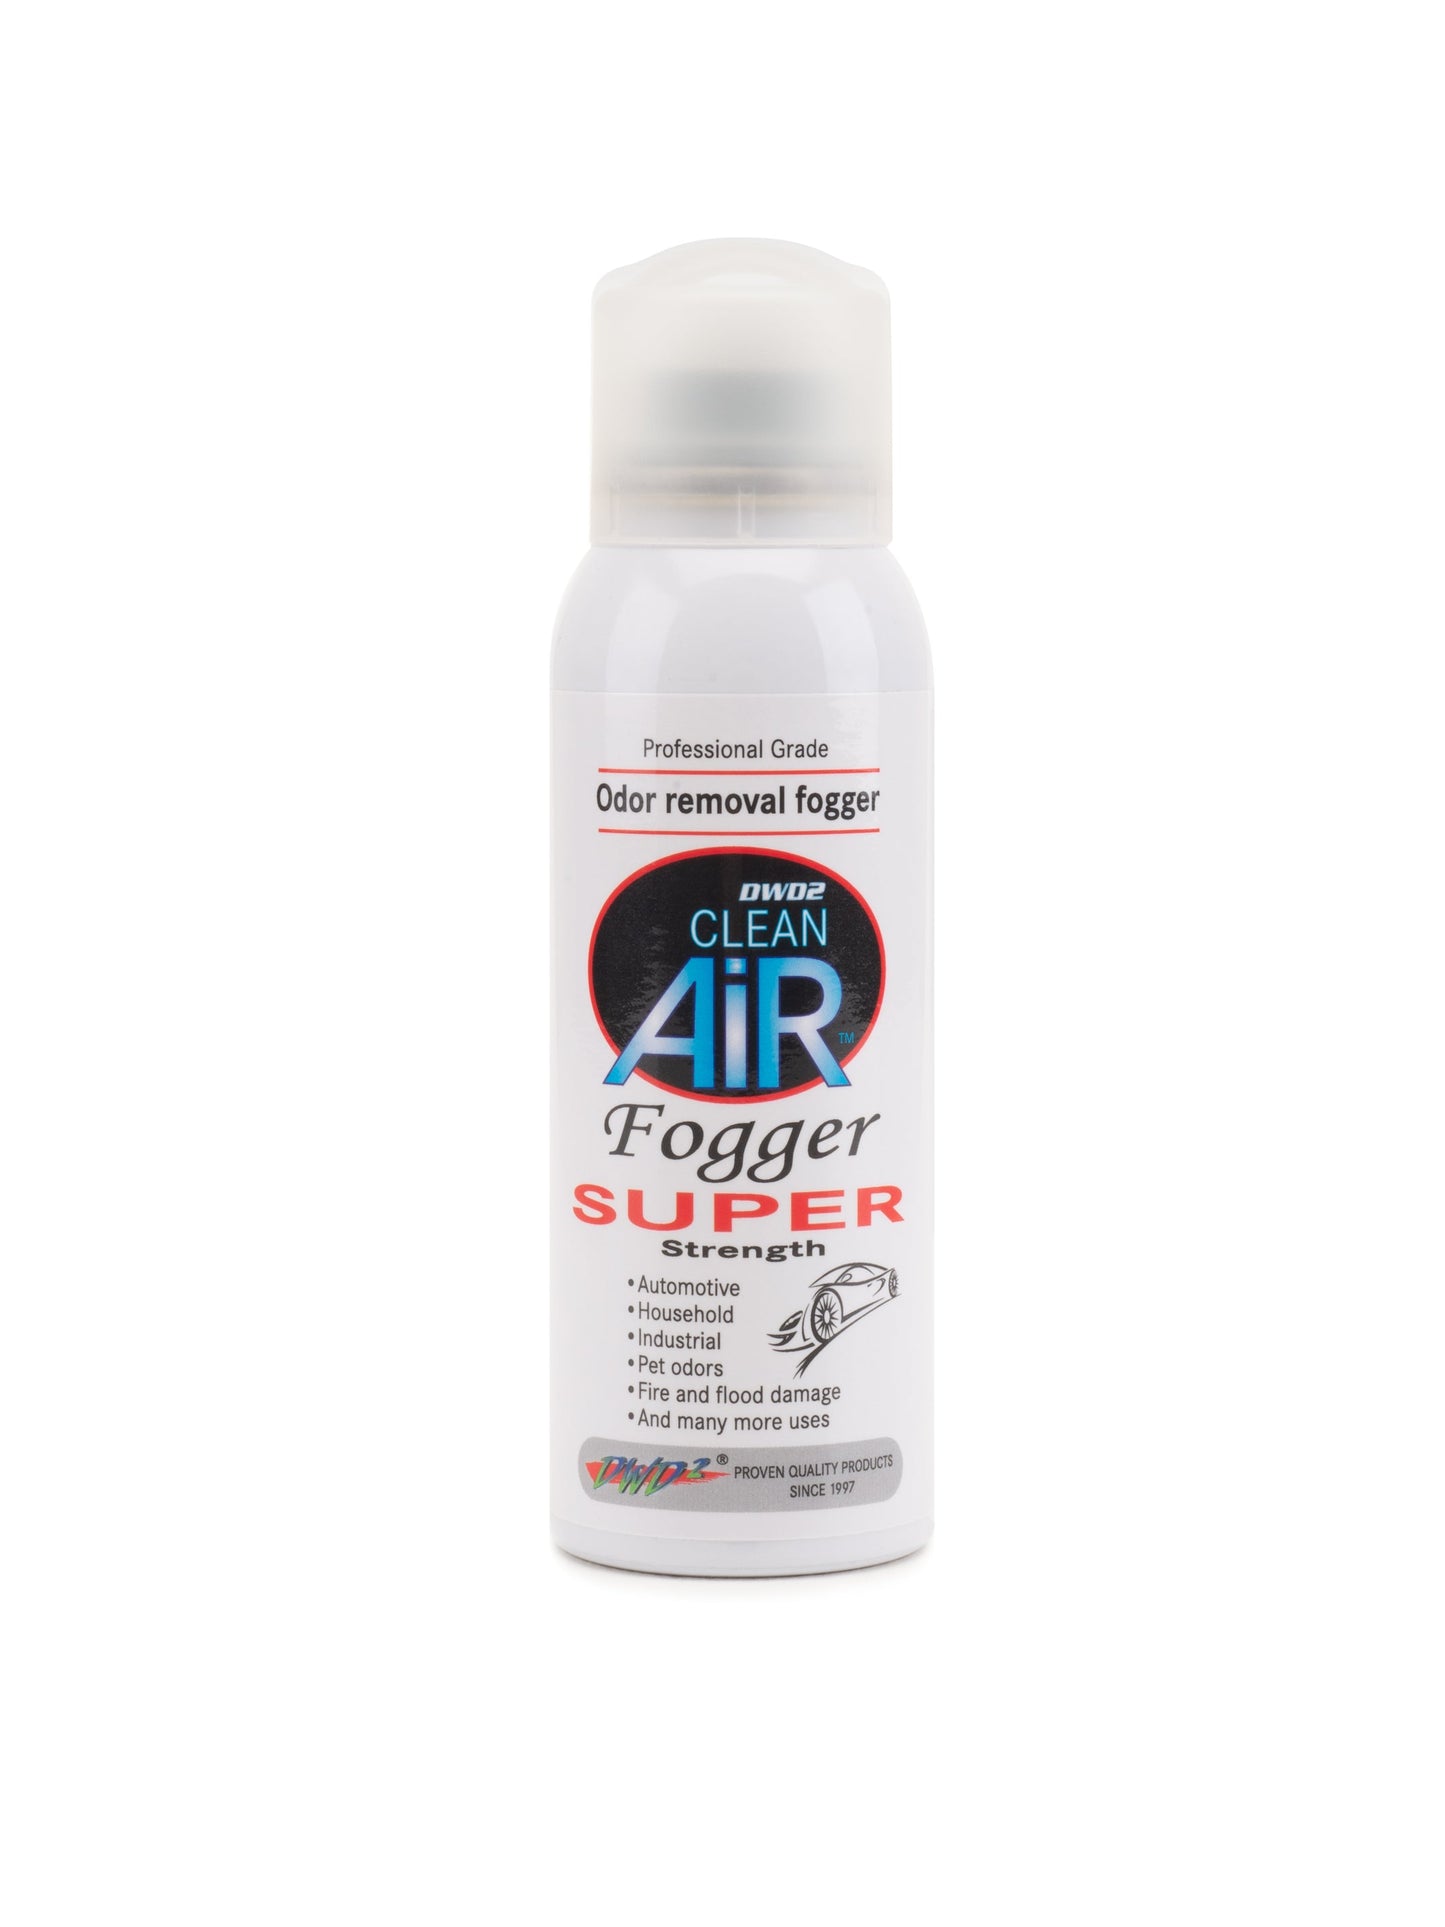 DWD2 Clean Air® Fogger Odor Eliminator (Super Strength Cinnamon) 3 oz. by The DWD2 System, Inc.